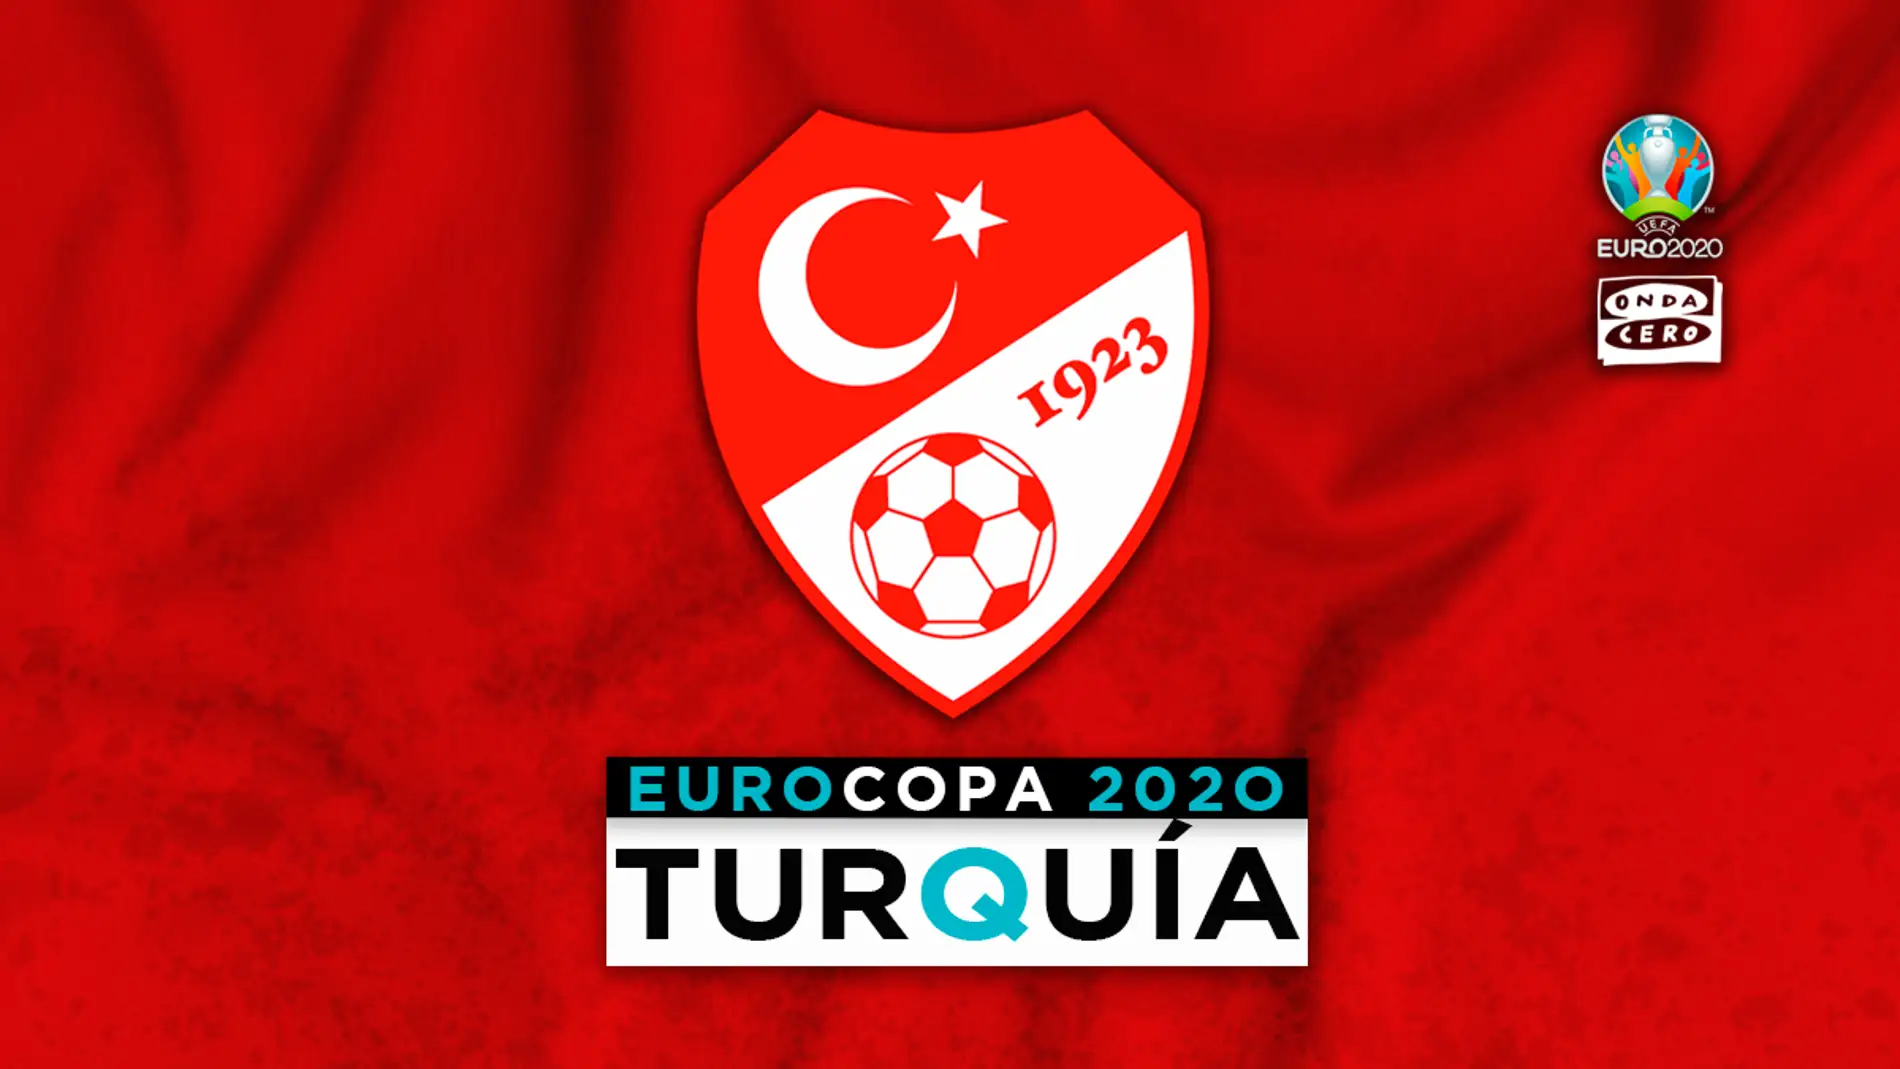 Turquía en la Eurocopa: alineación probable, convocatoria y lista completa de jugadores